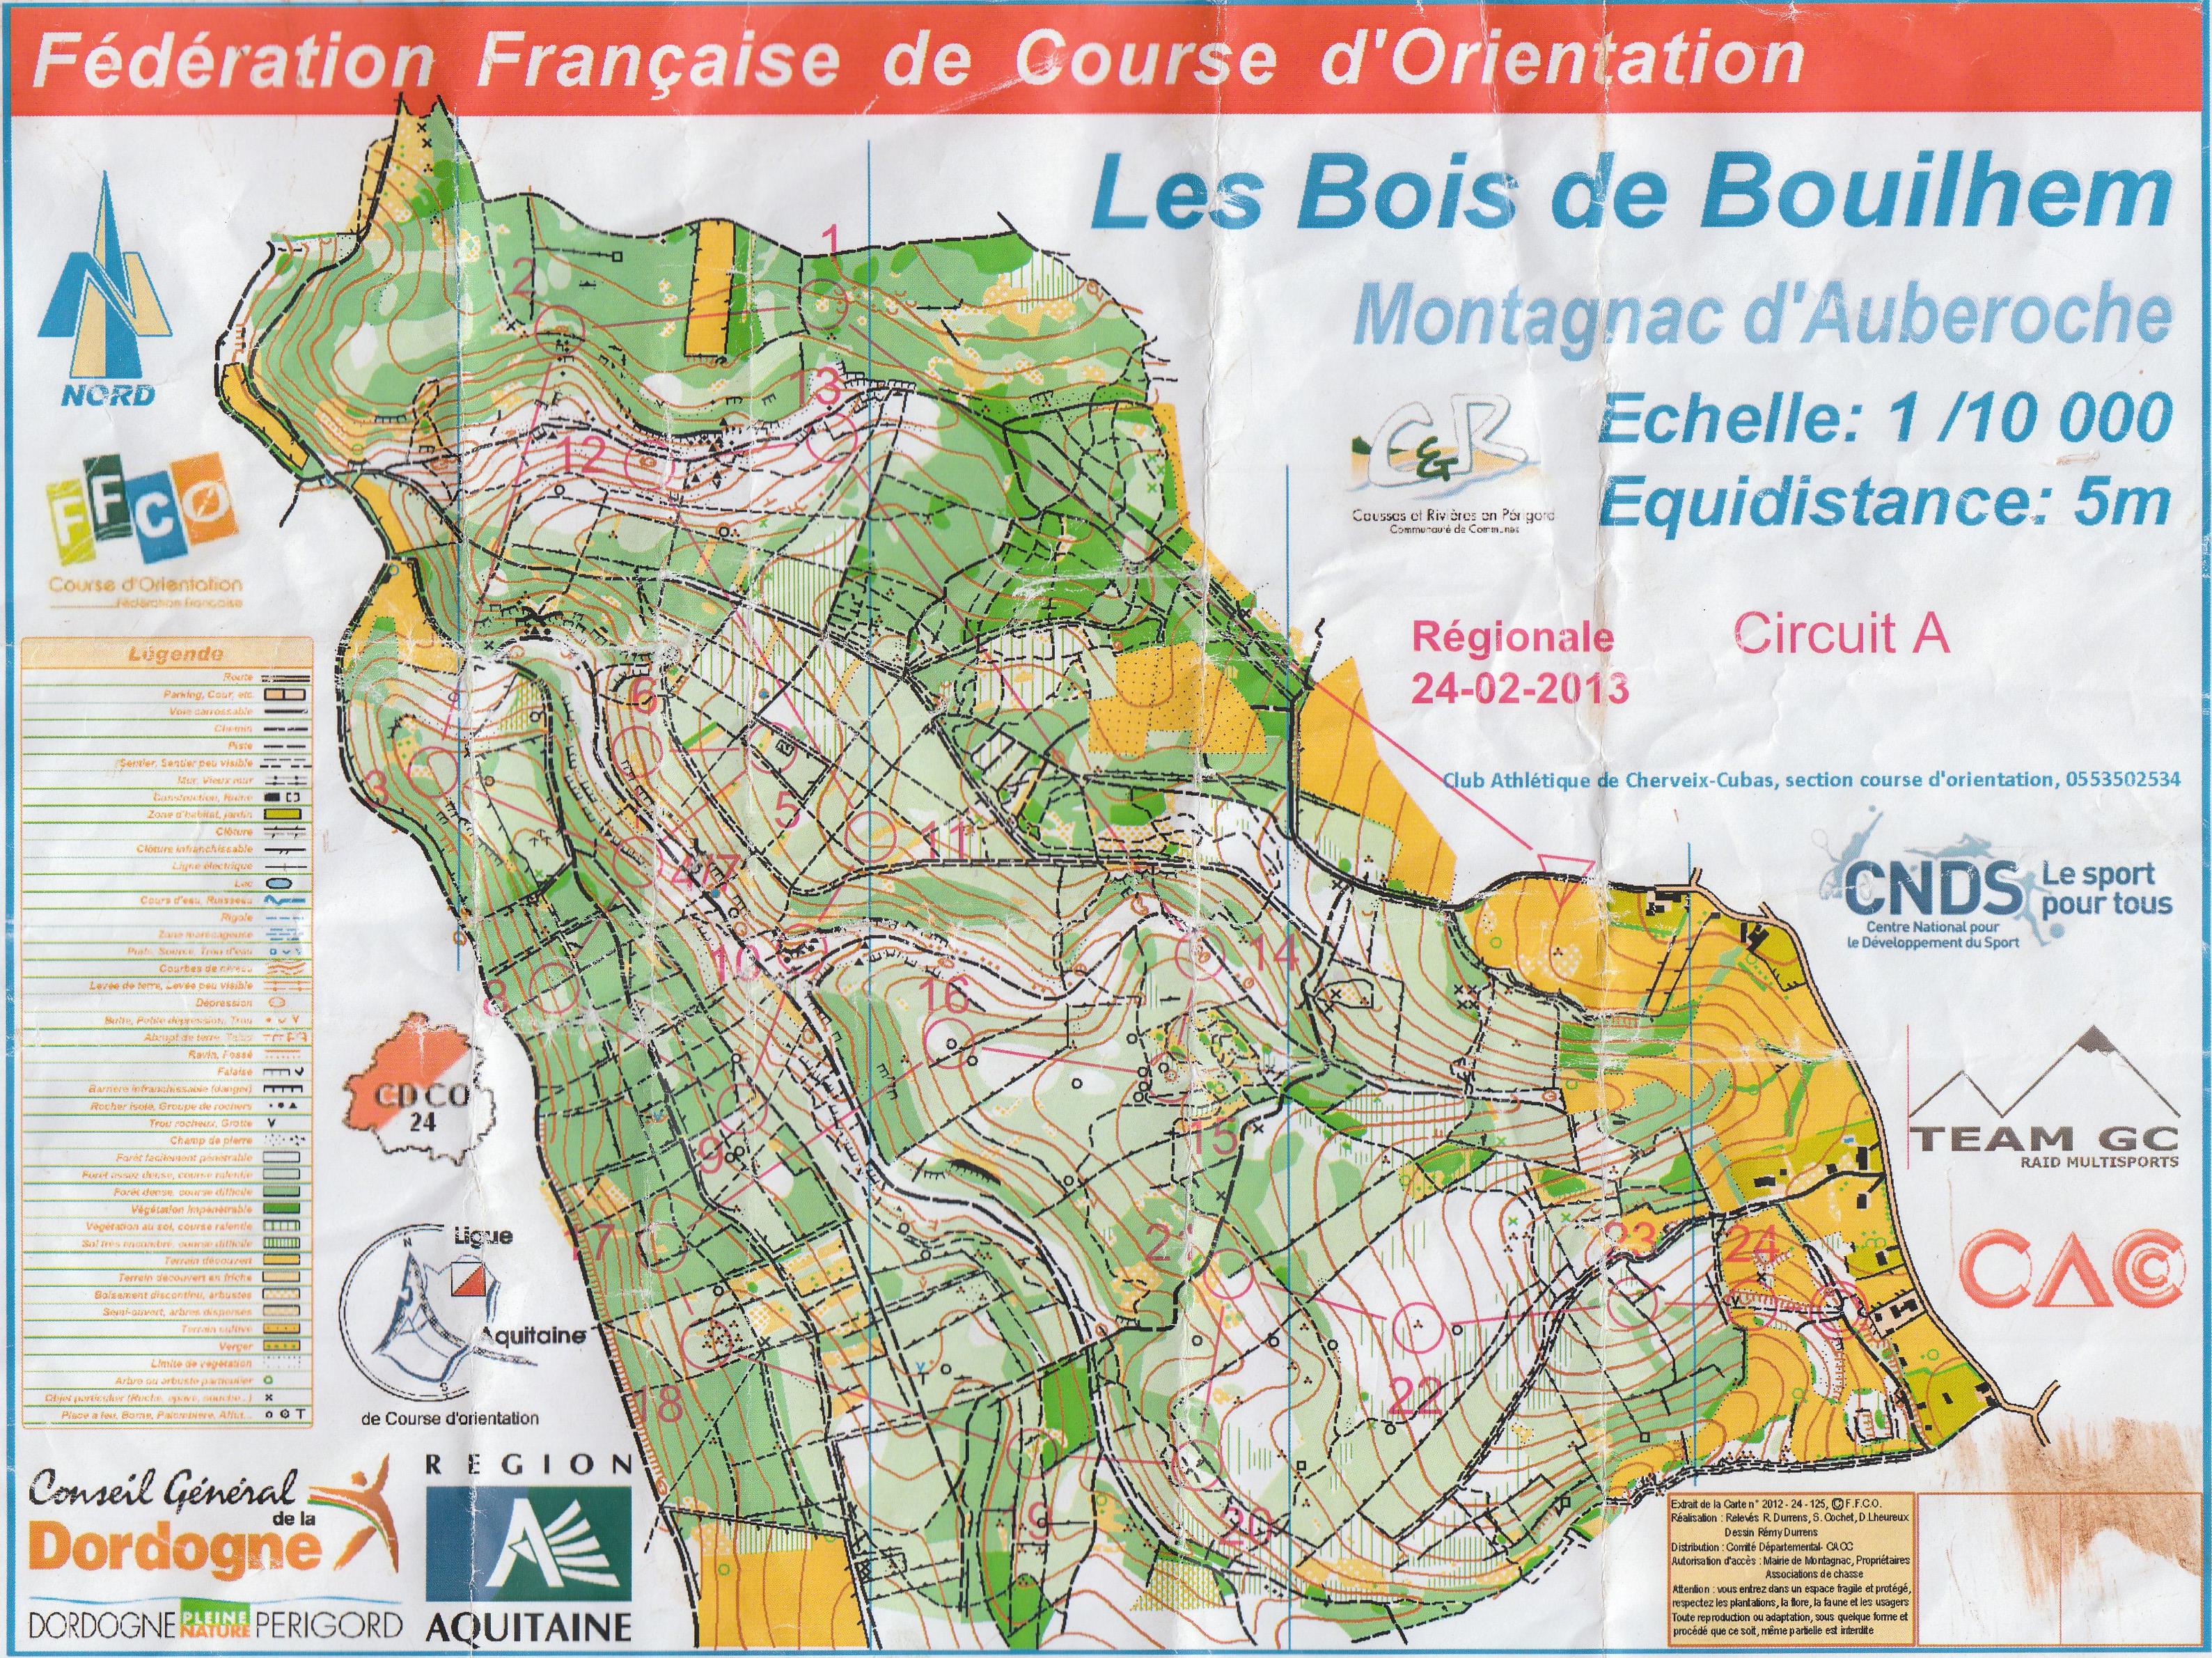 Régionale LD Aquitaine (24.02.2013)